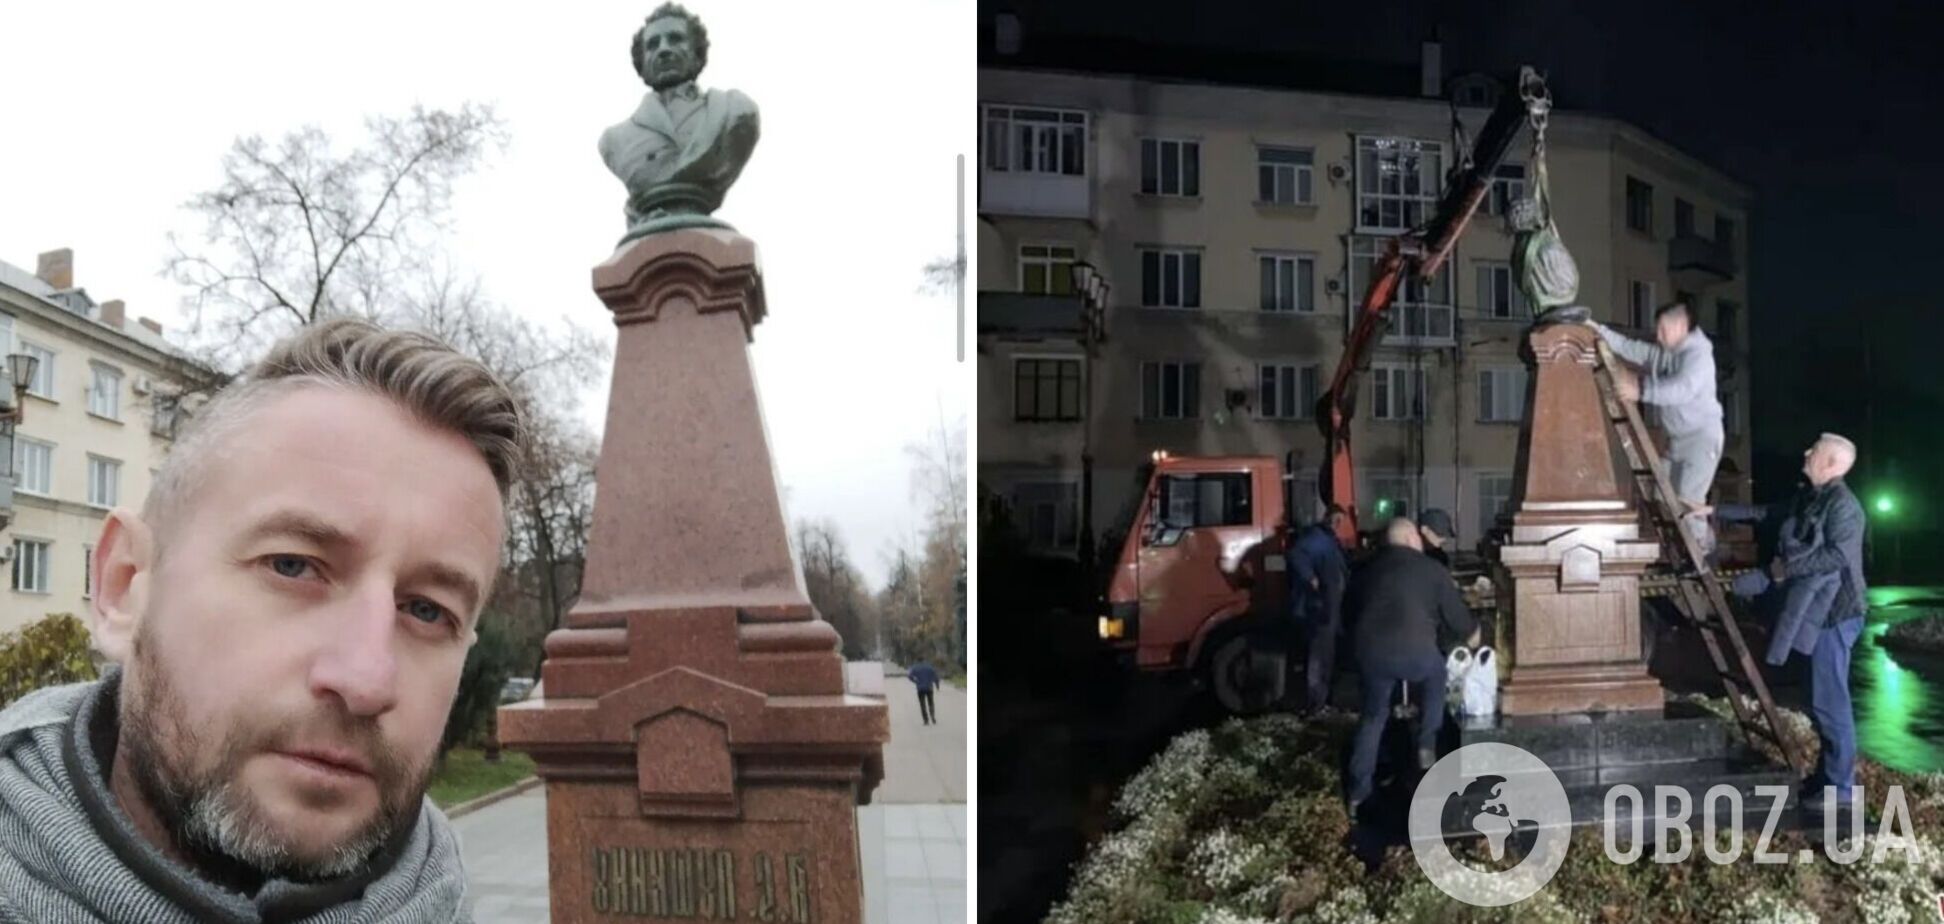 'Не имею к этому никакого отношения': Жадан сфотографировался на фоне памятника Пушкину в Житомире, после чего его снесли